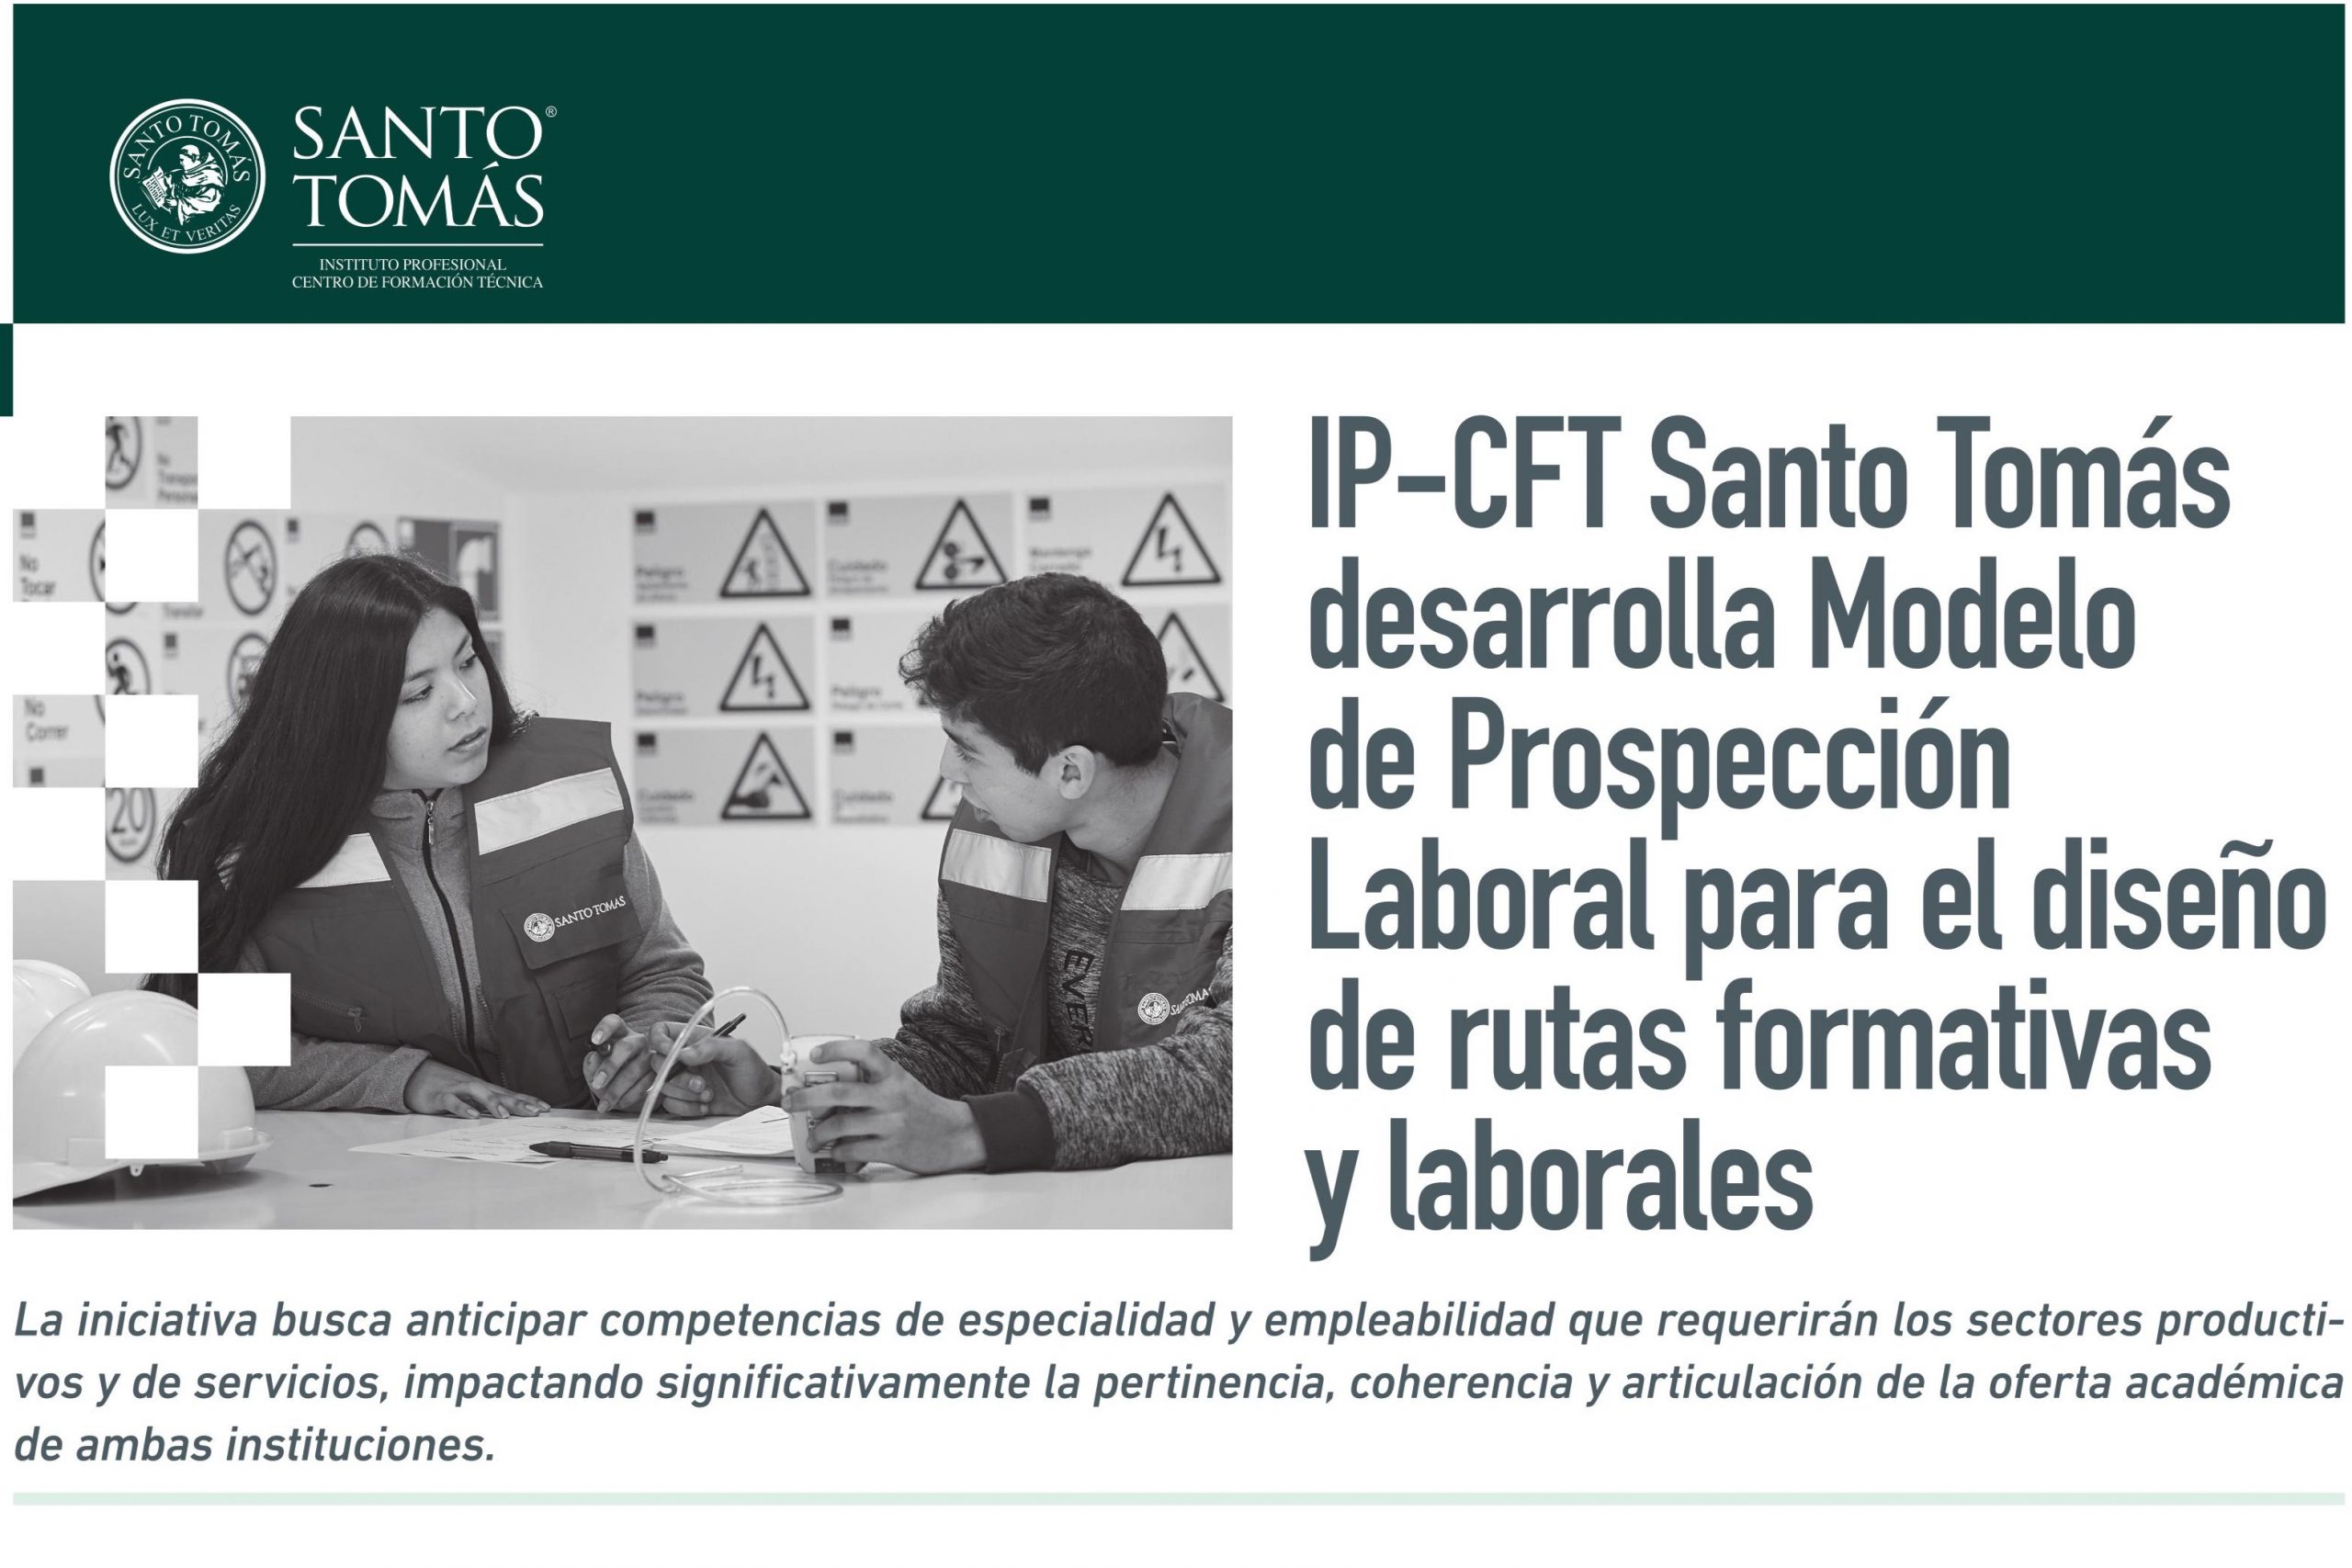 IP-CFT Santo Tomás desarrolla Modelo de Prospección Laboral para el diseño de rutas formativas y laborales